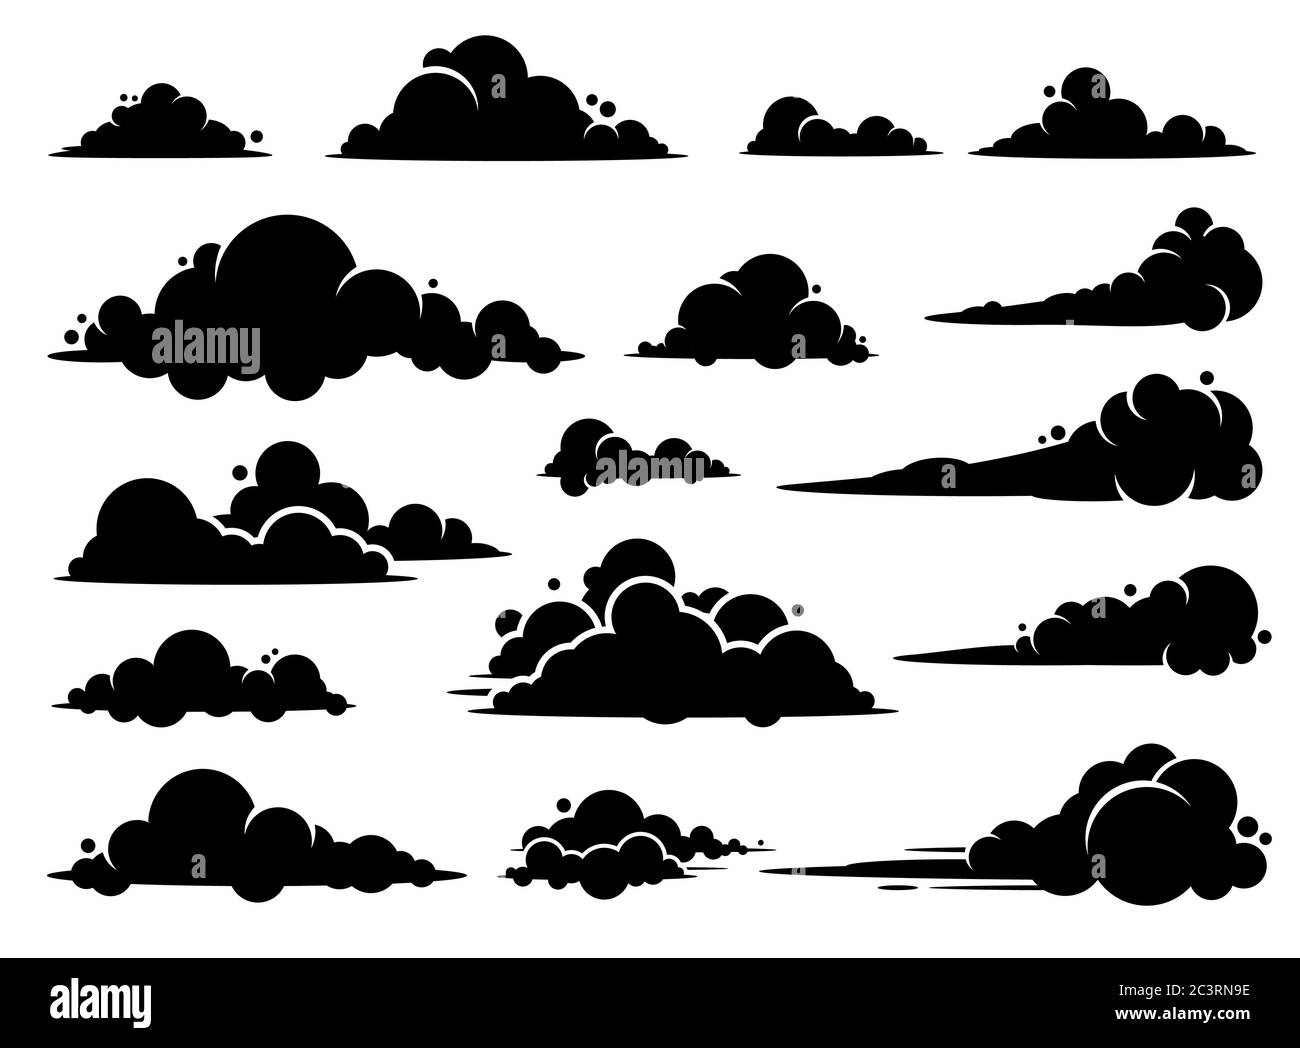 Motif graphique vectoriel de nuage. Un ensemble de nuages illustration dans le ciel en silhouette noire. Illustration de Vecteur